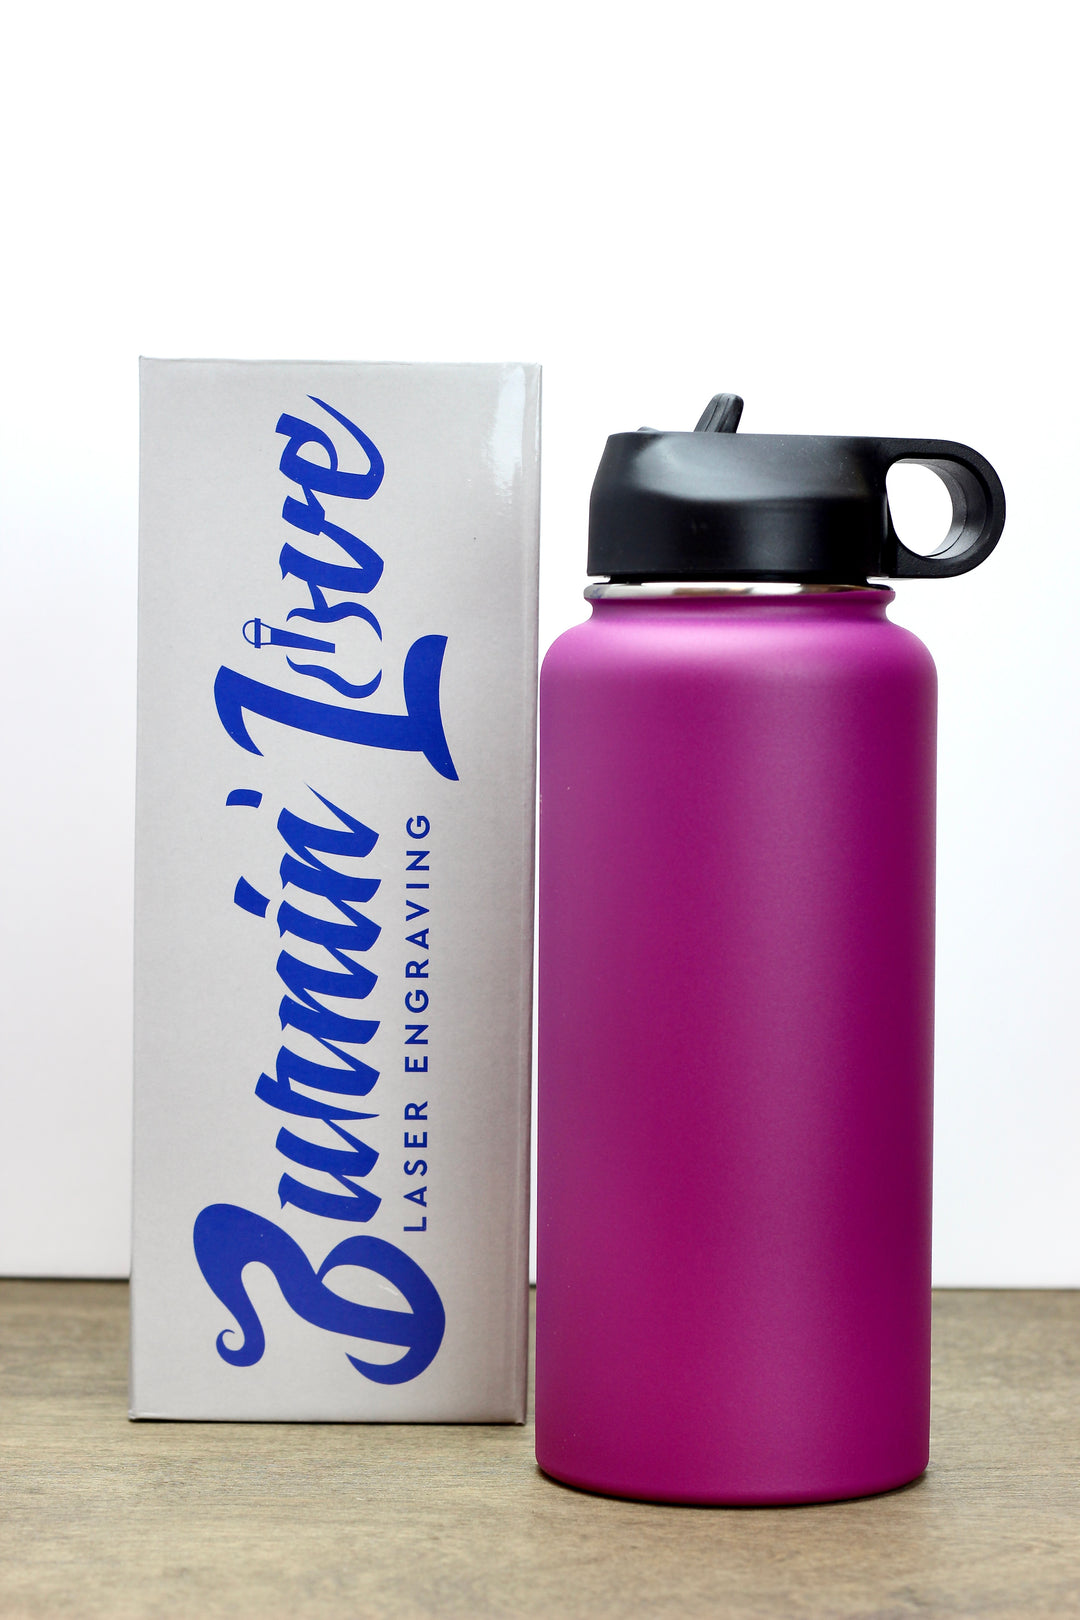 I Love Purple Water Bottle